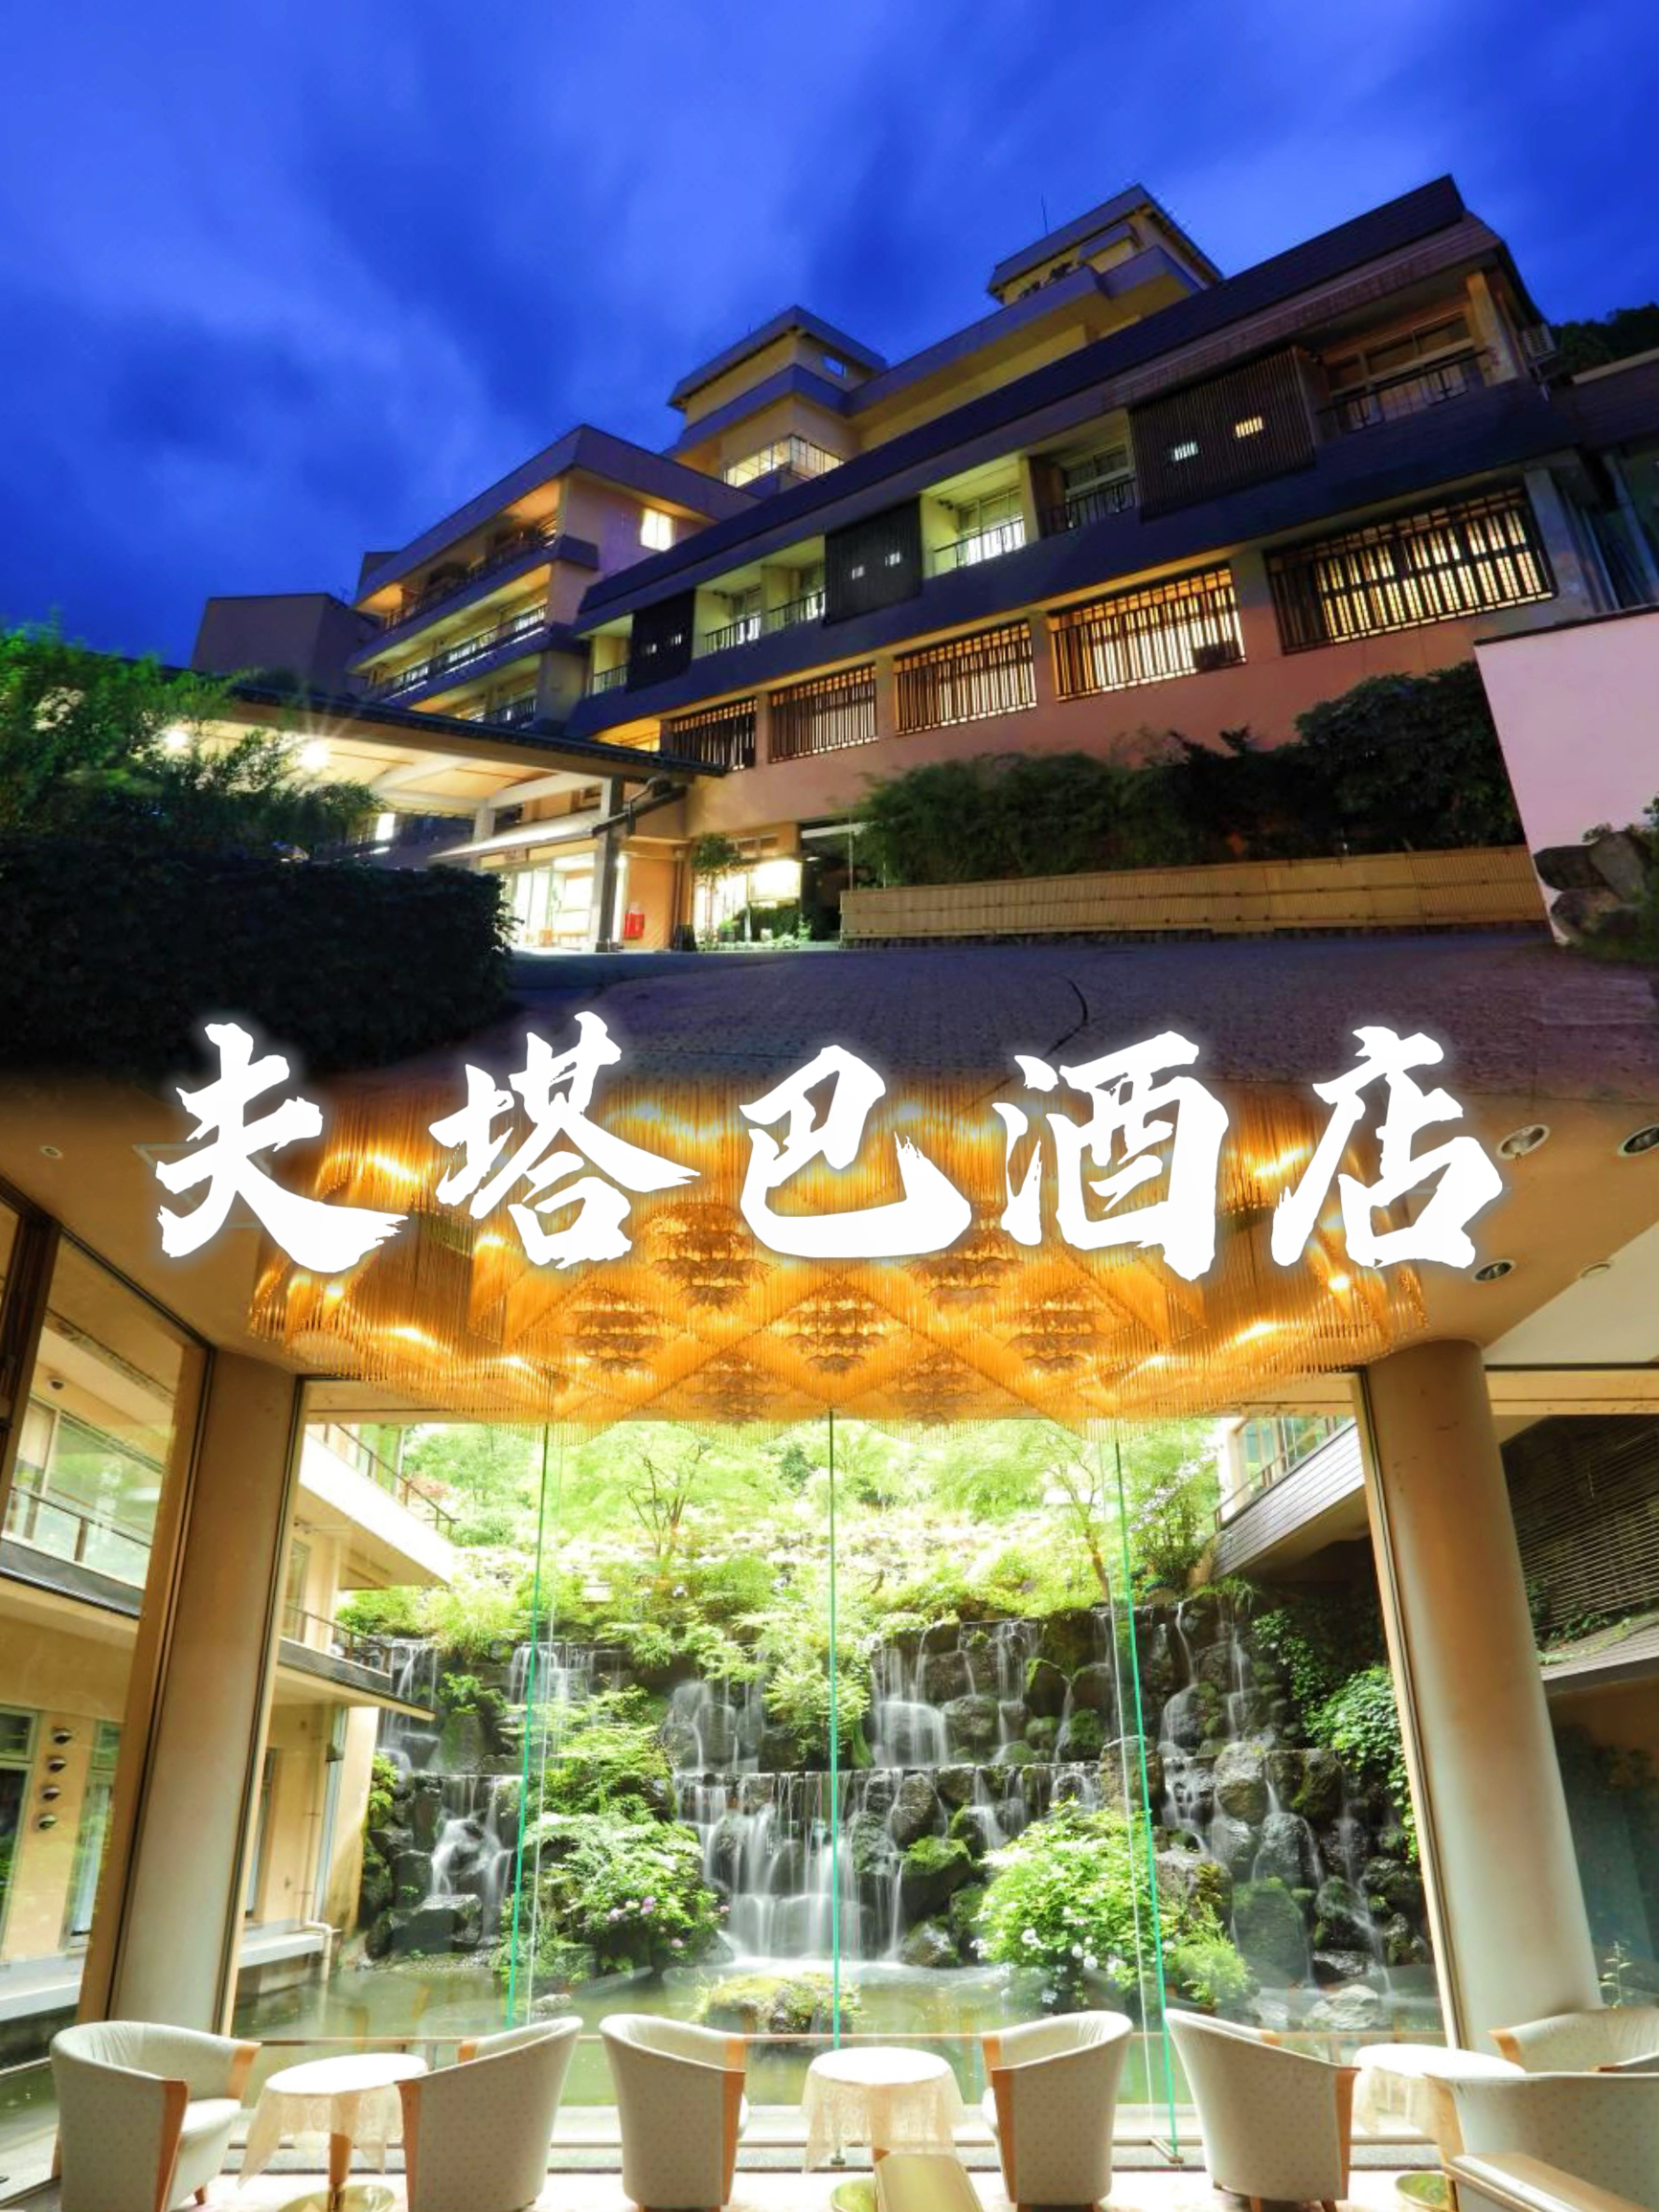 近期我有幸入住了位于日本新泻县汤泽町的夫塔巴酒店，这是一次难忘的住宿体验。 一、地理位置与环境 夫塔